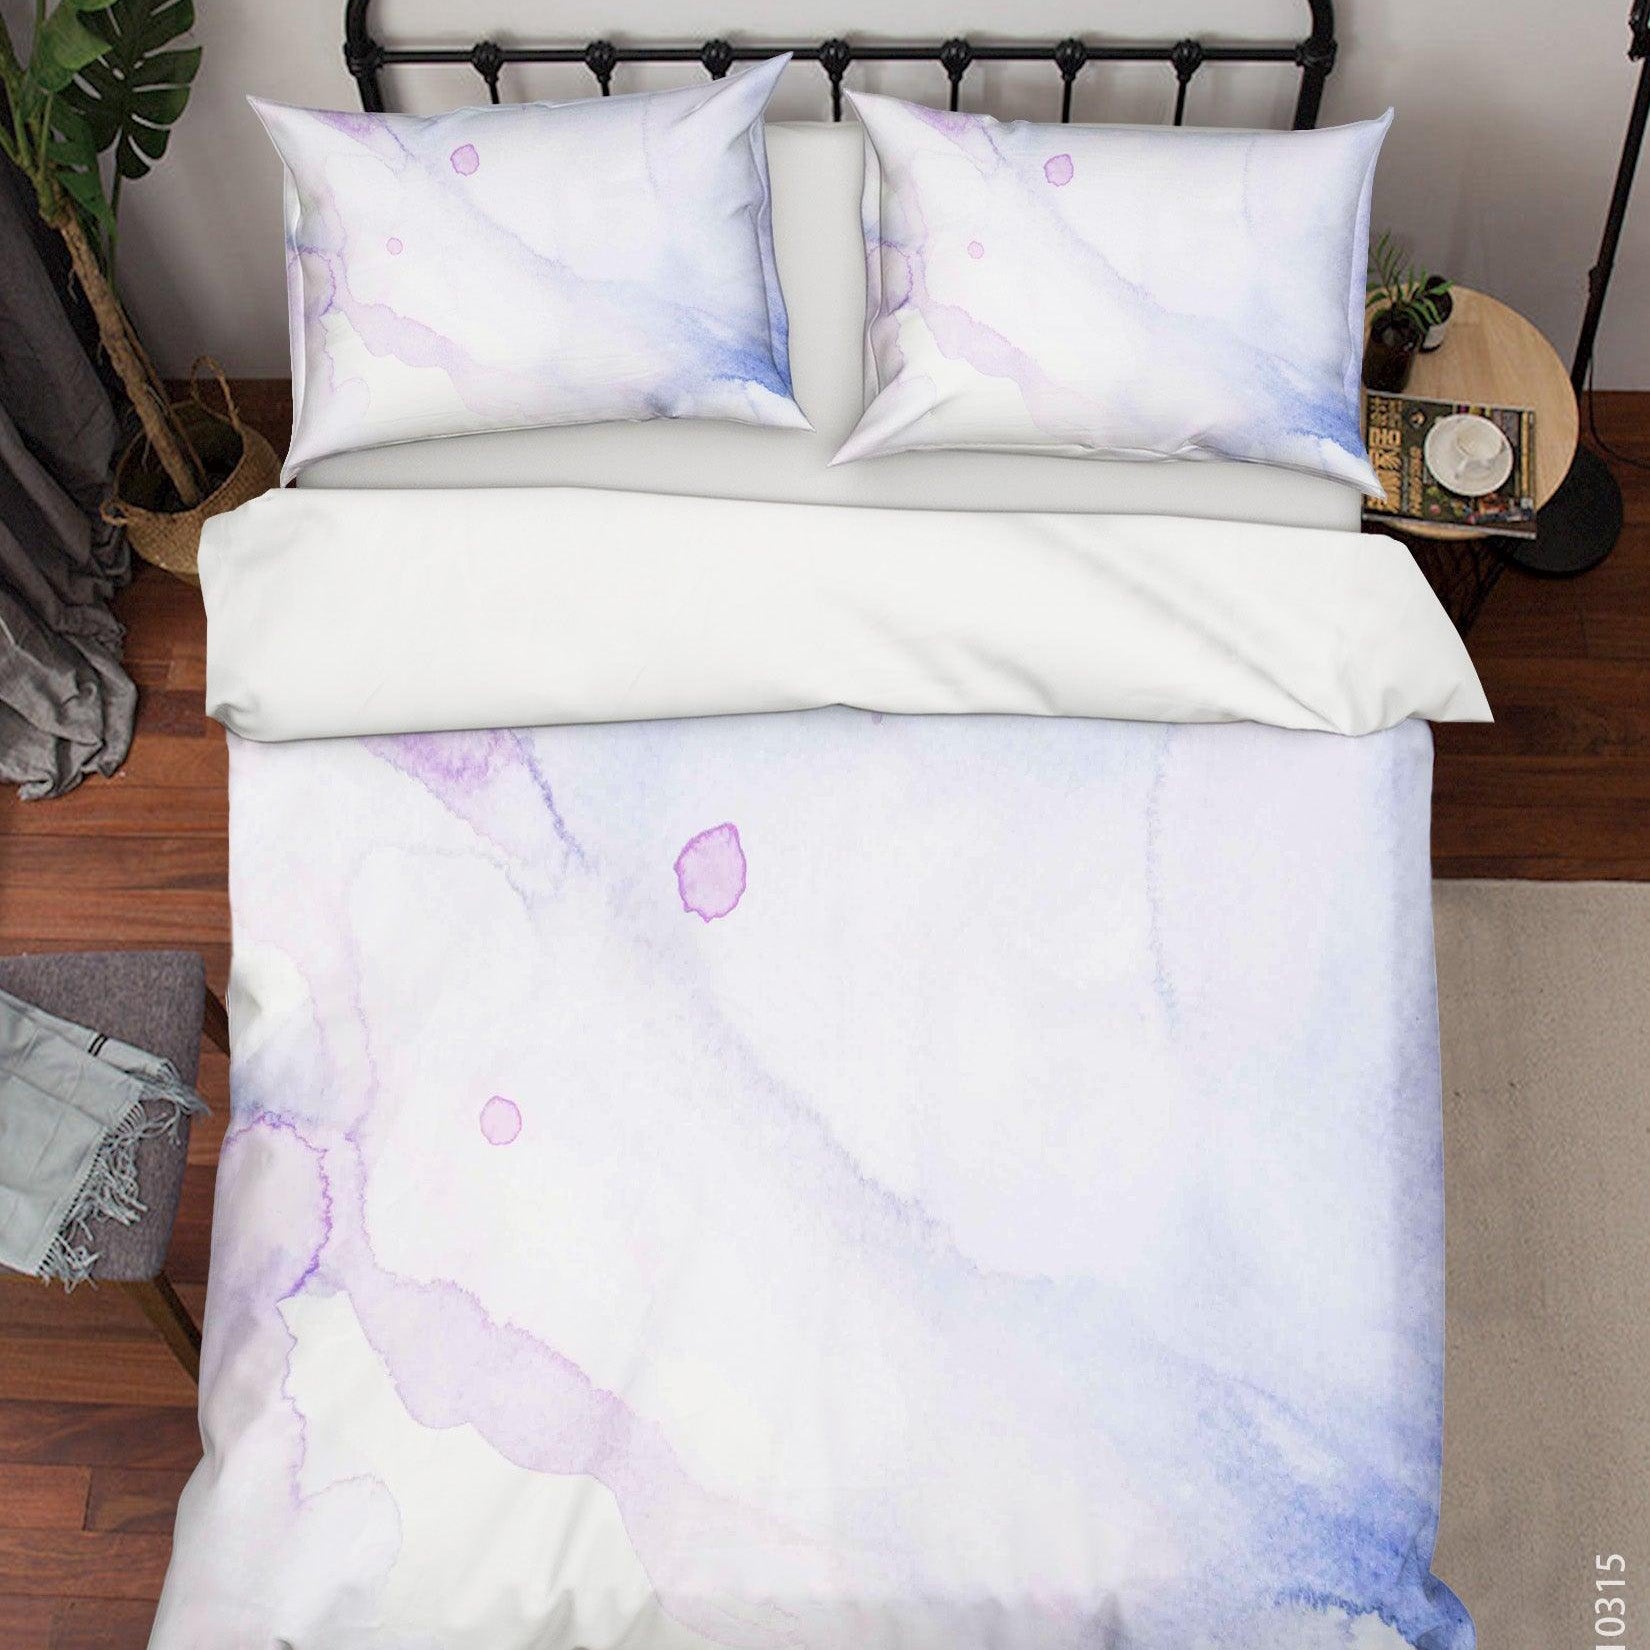 3D Watercolor Pattern Quilt Cover Set Bedding Set Duvet Cover Pillowcases 38- Jess Art Decoration